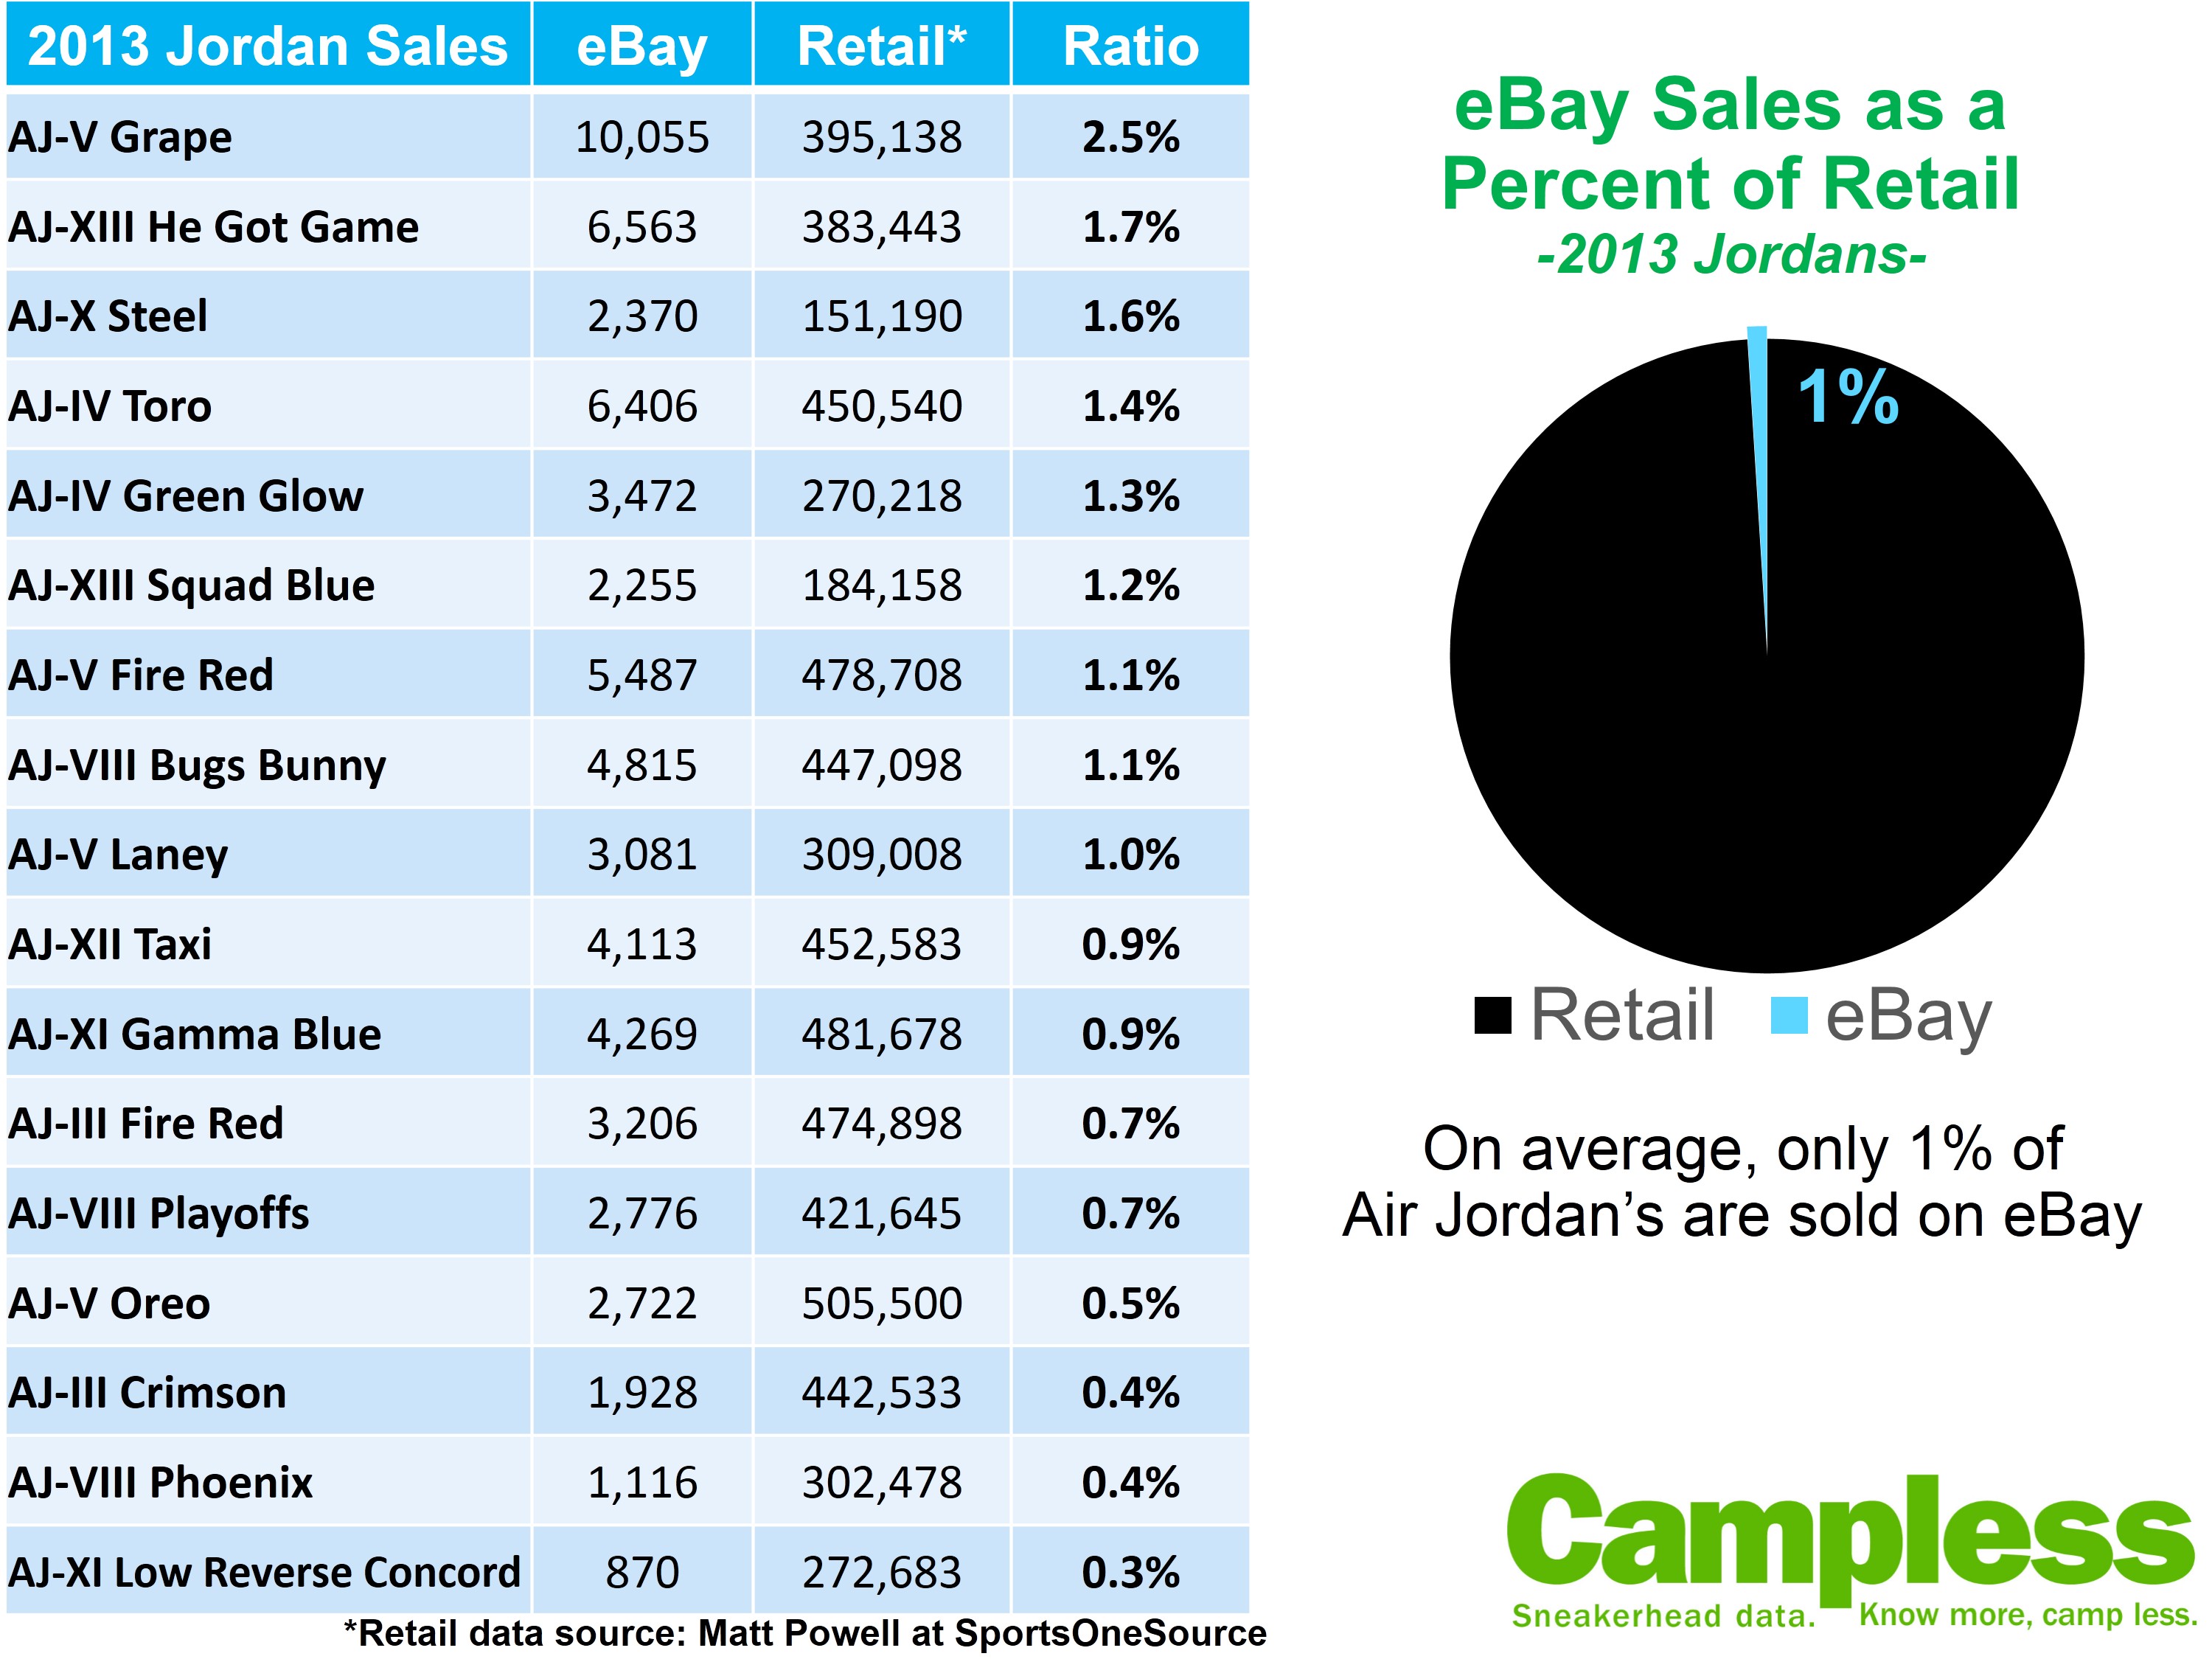 vej Resultat Dovenskab most sold jordans> OFF-54%